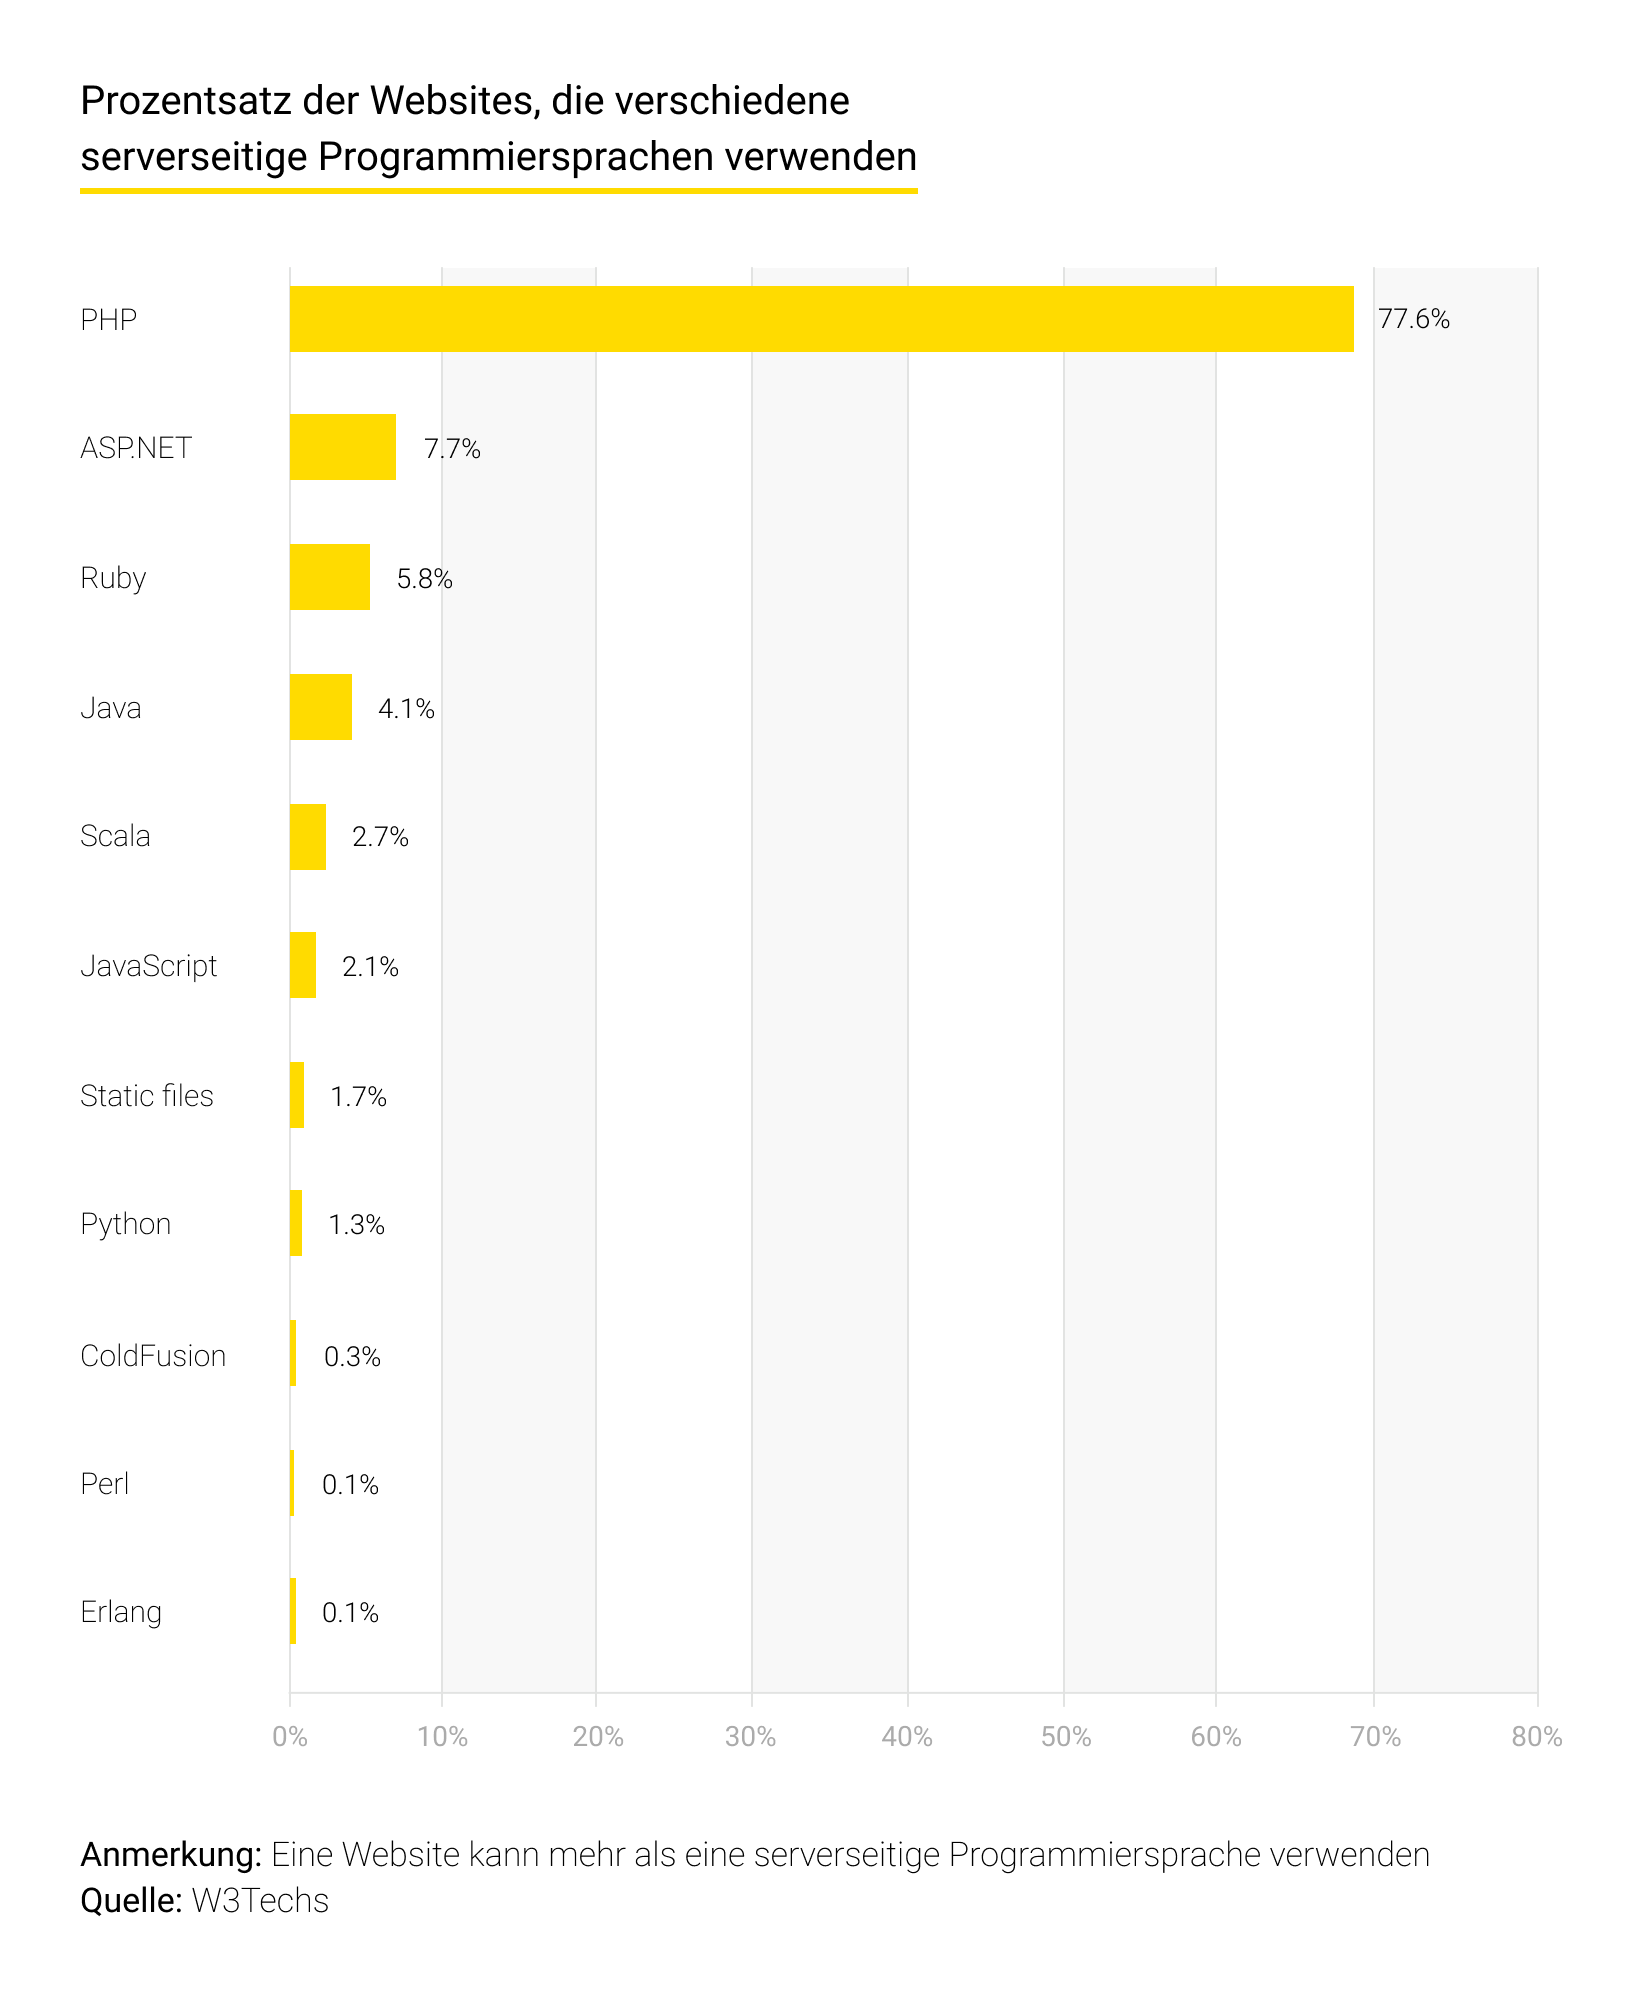 Prozentsatz der Websites, die verschiedene serverseitige Programmiersprachen verwenden